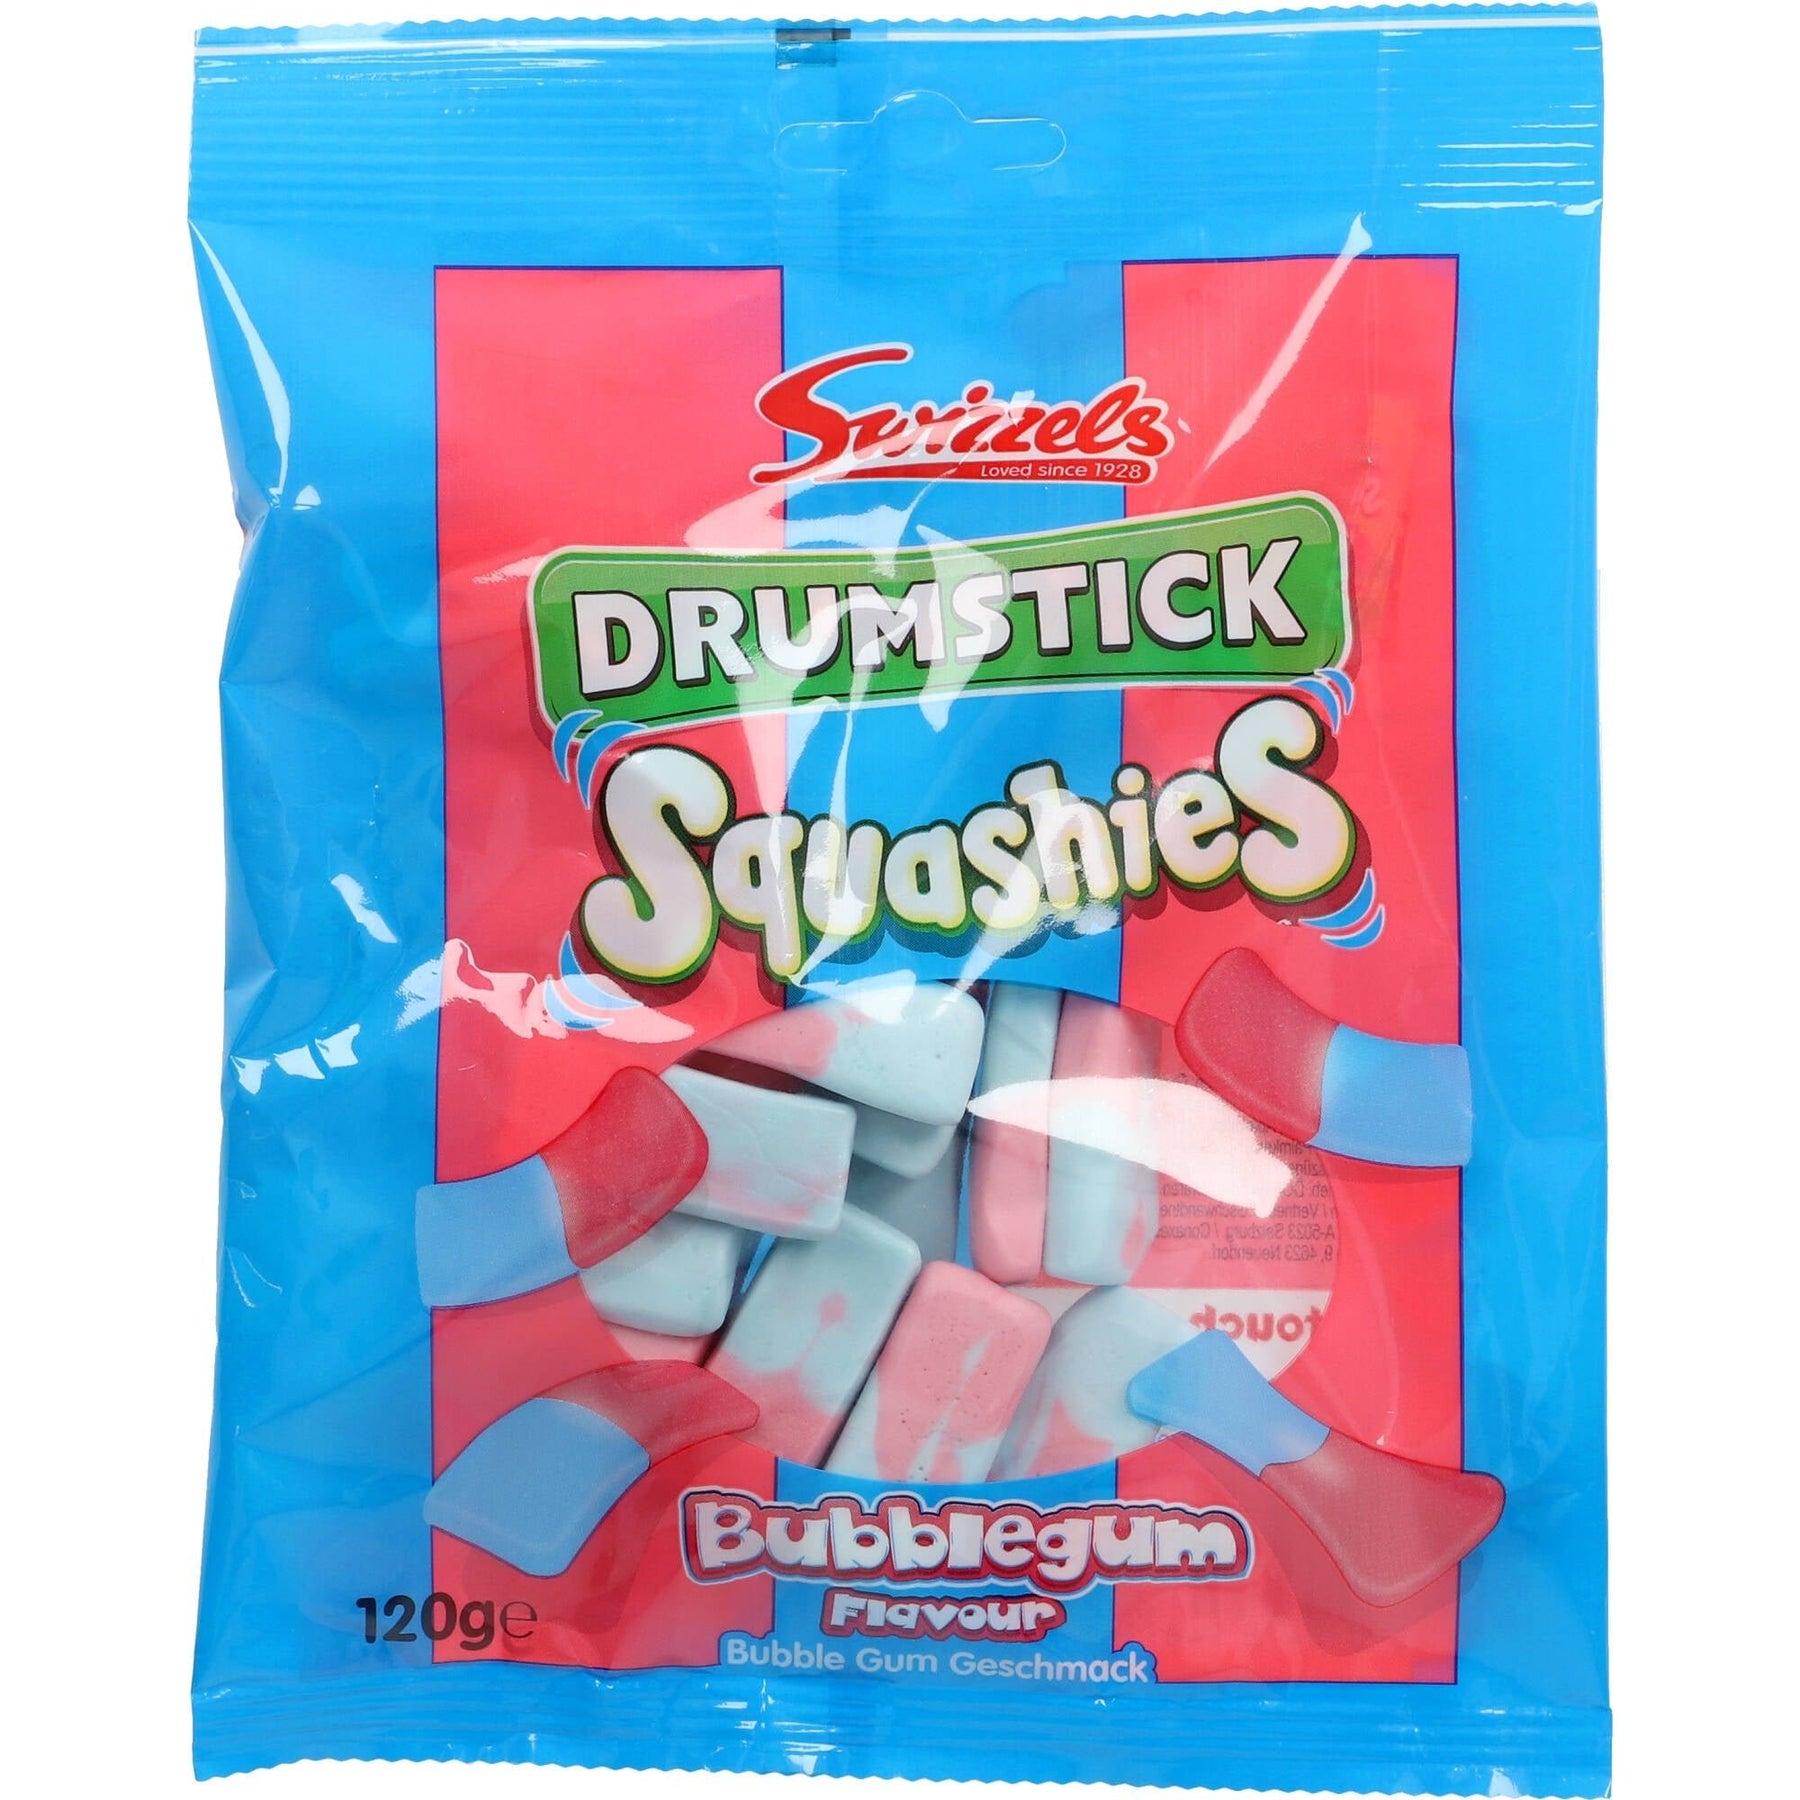 DOK Swizzels Drumstick Squashies 120g AllSpirits Gum Bubble – Flavour